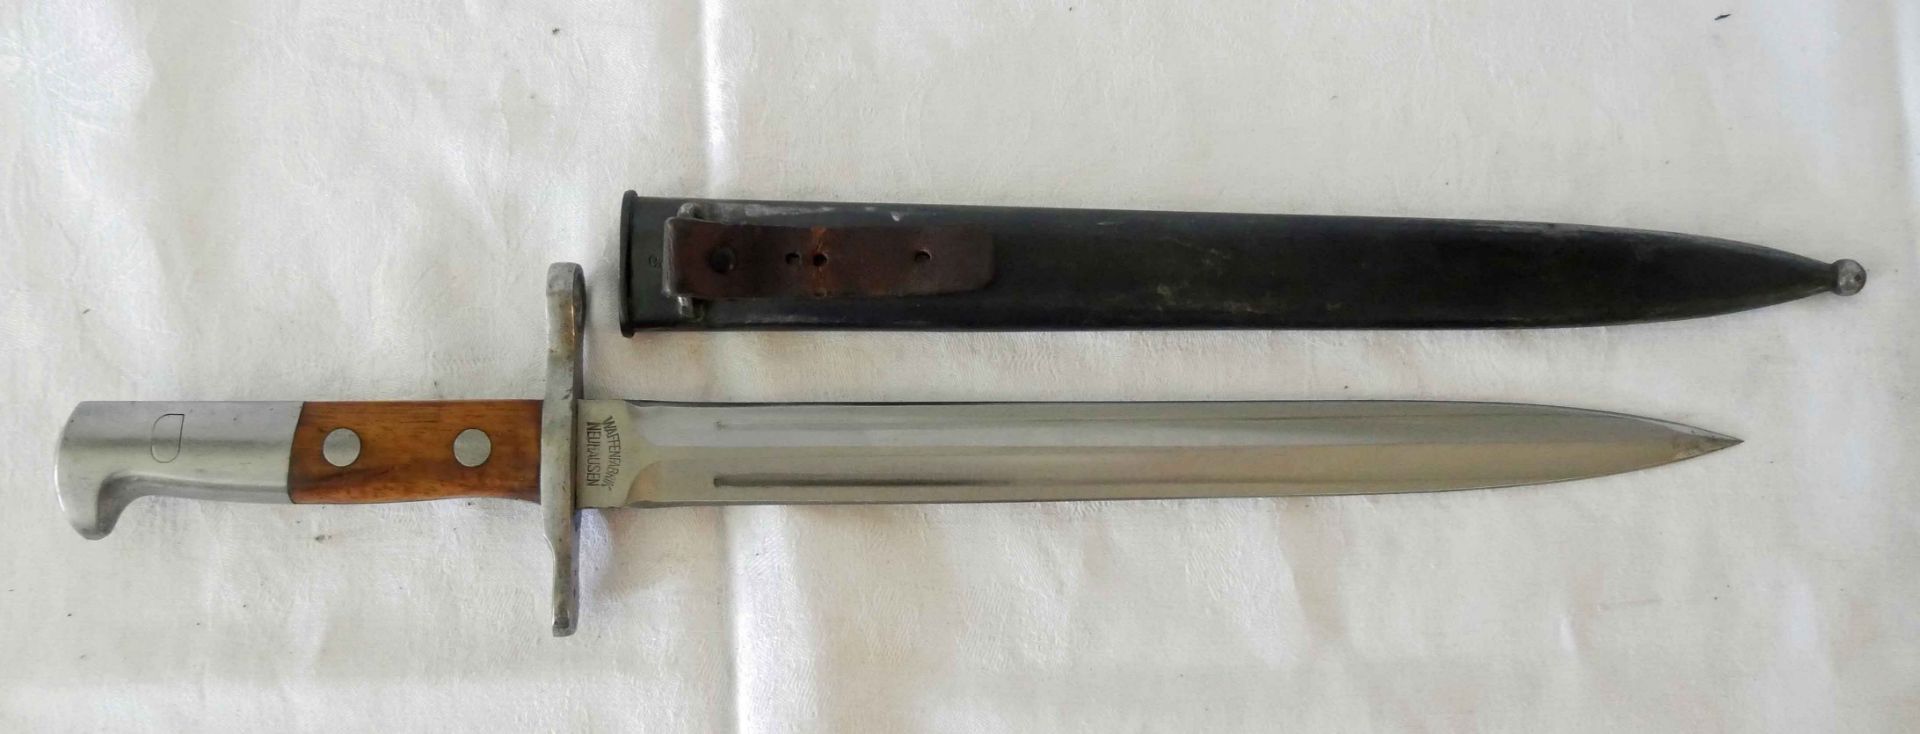 Schweiz Bajonett M1918, Waffenfabrik Neuhausen. Klinge zweischneidig. Klingenlänge: ca. 30 cm. - Bild 4 aus 5